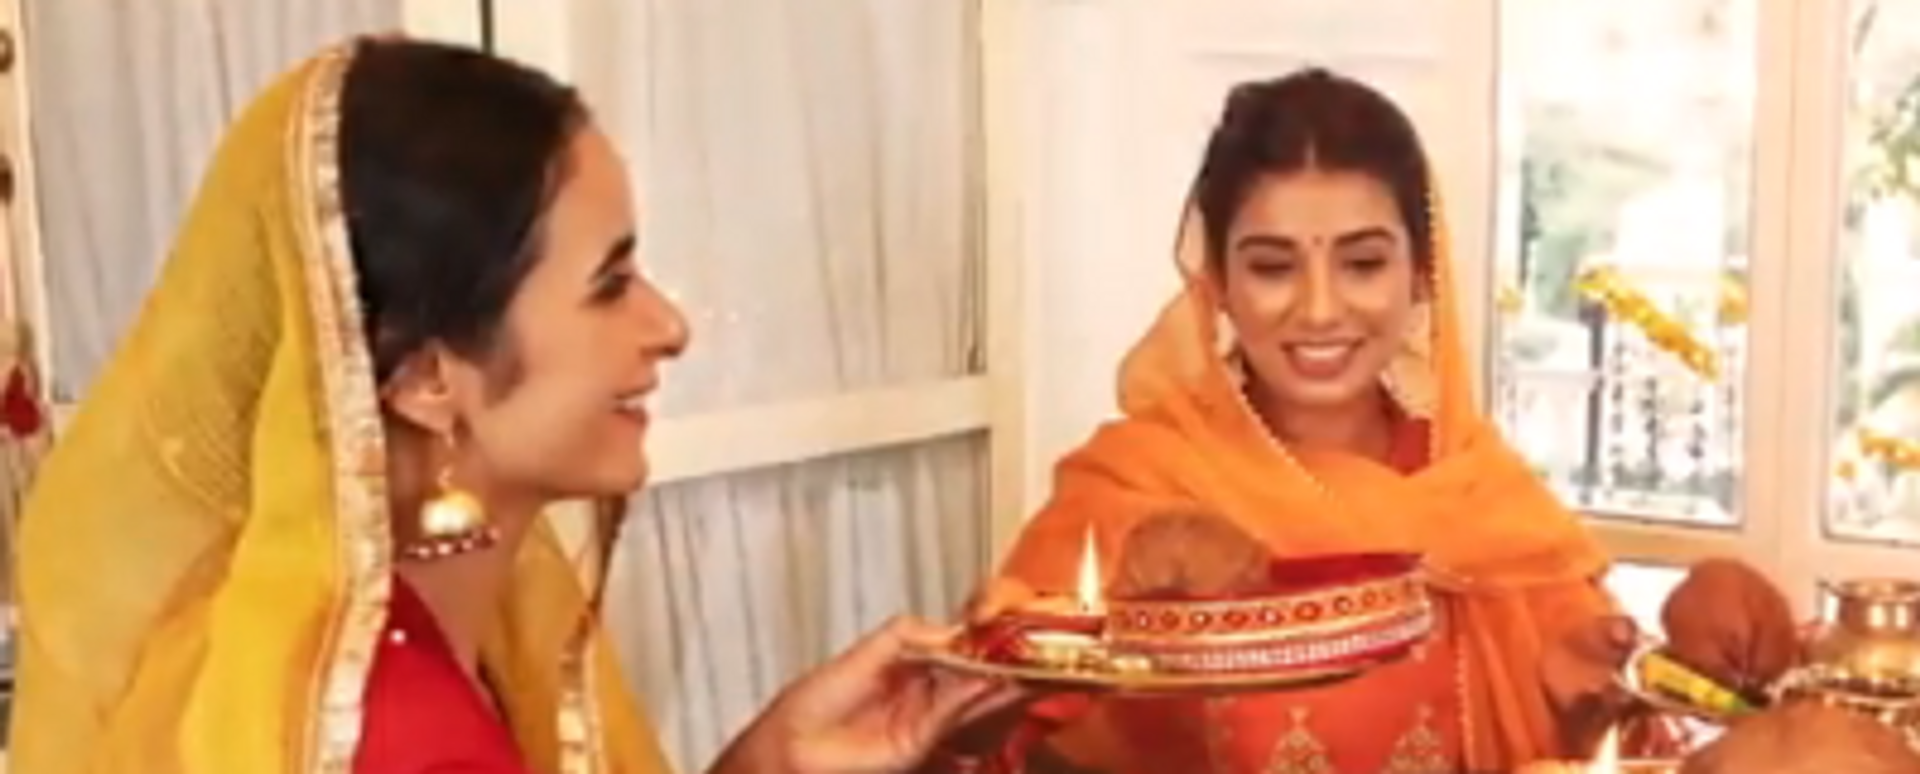 How Married Women Celebrate Karwa Chauth in 2023. - Sputnik India, 1920, 31.10.2023